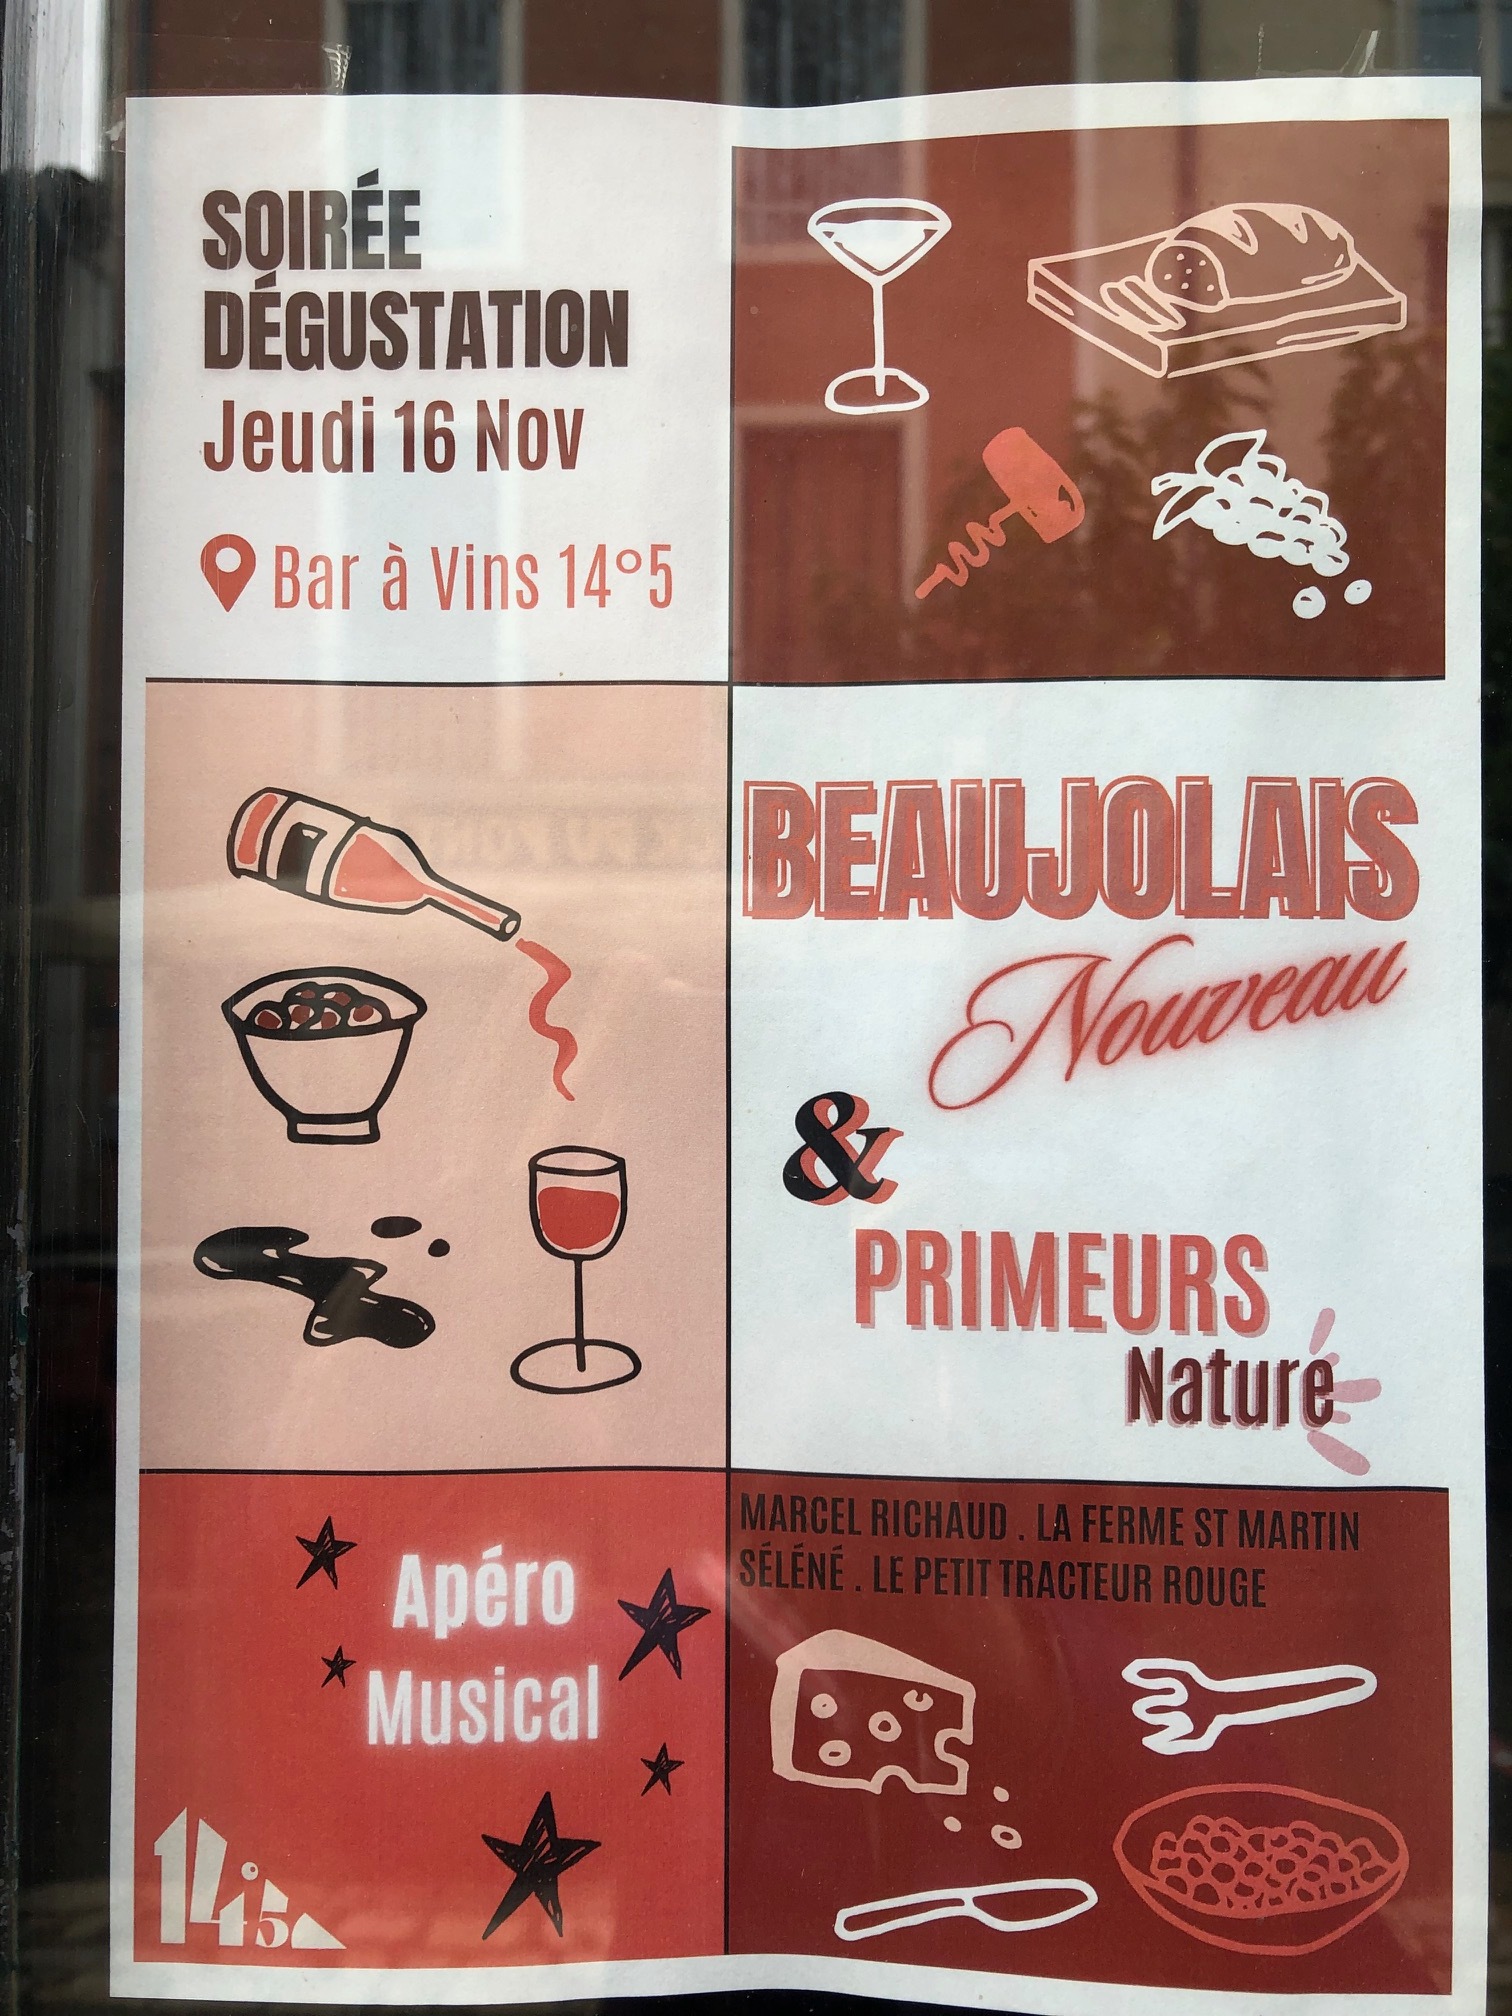 Soirée dégustation Beaujolais Nouveau et Primeurs Nature